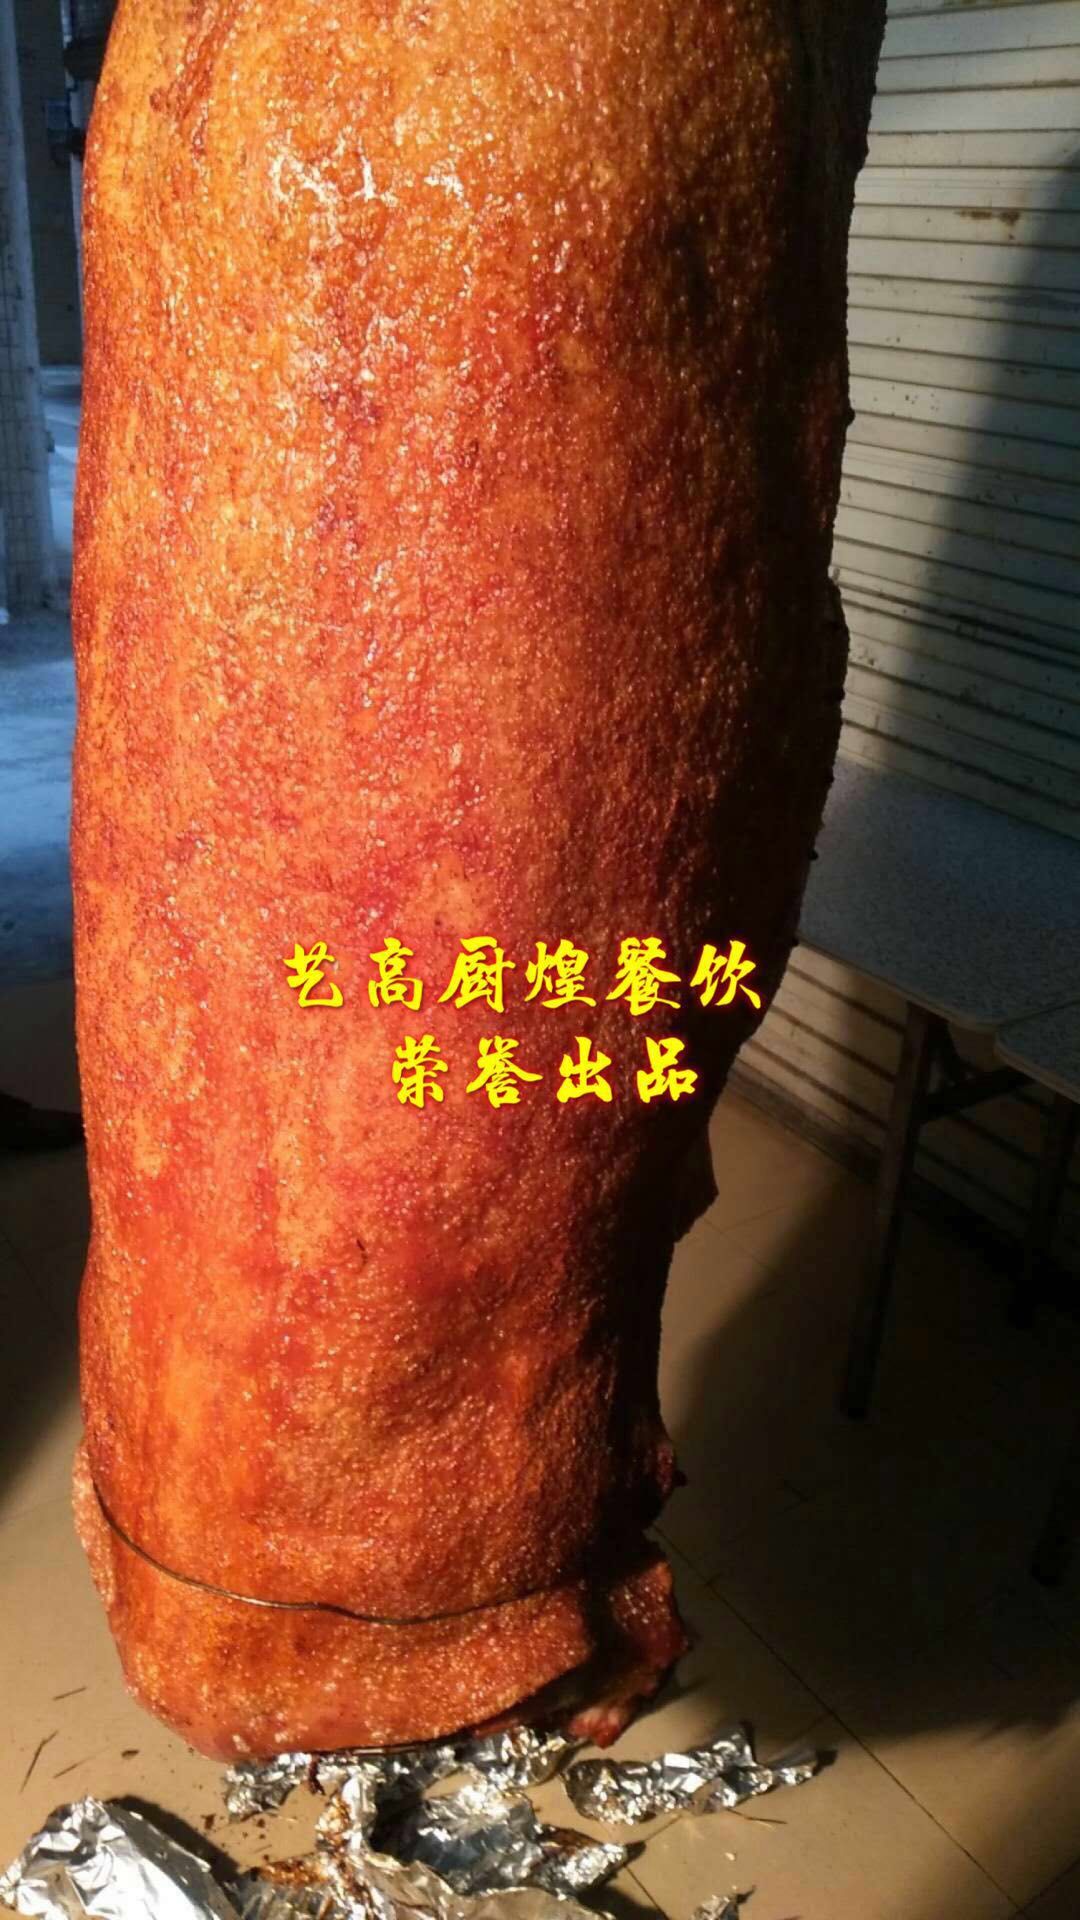 廣州學習脆皮烤大豬培訓學校